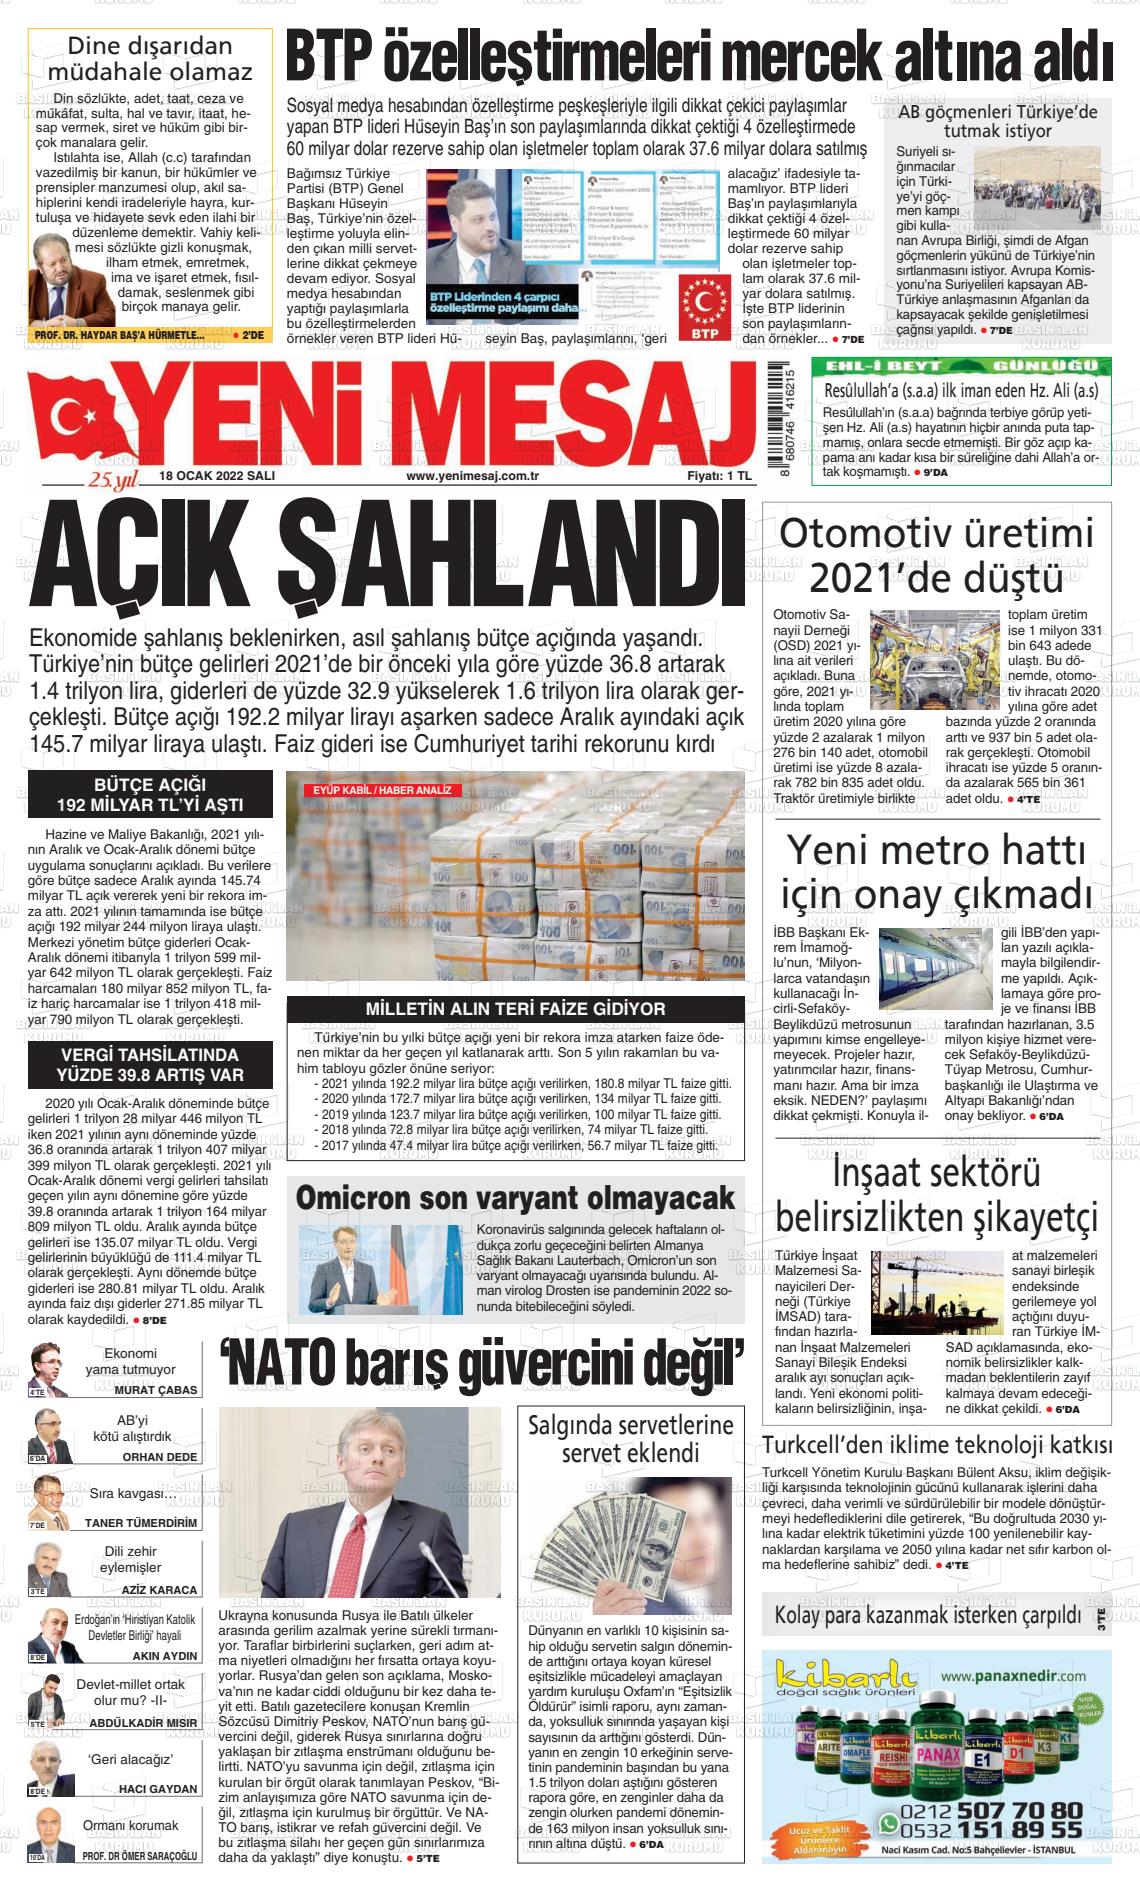 18 Ocak 2022 Yeni Mesaj Gazete Manşeti